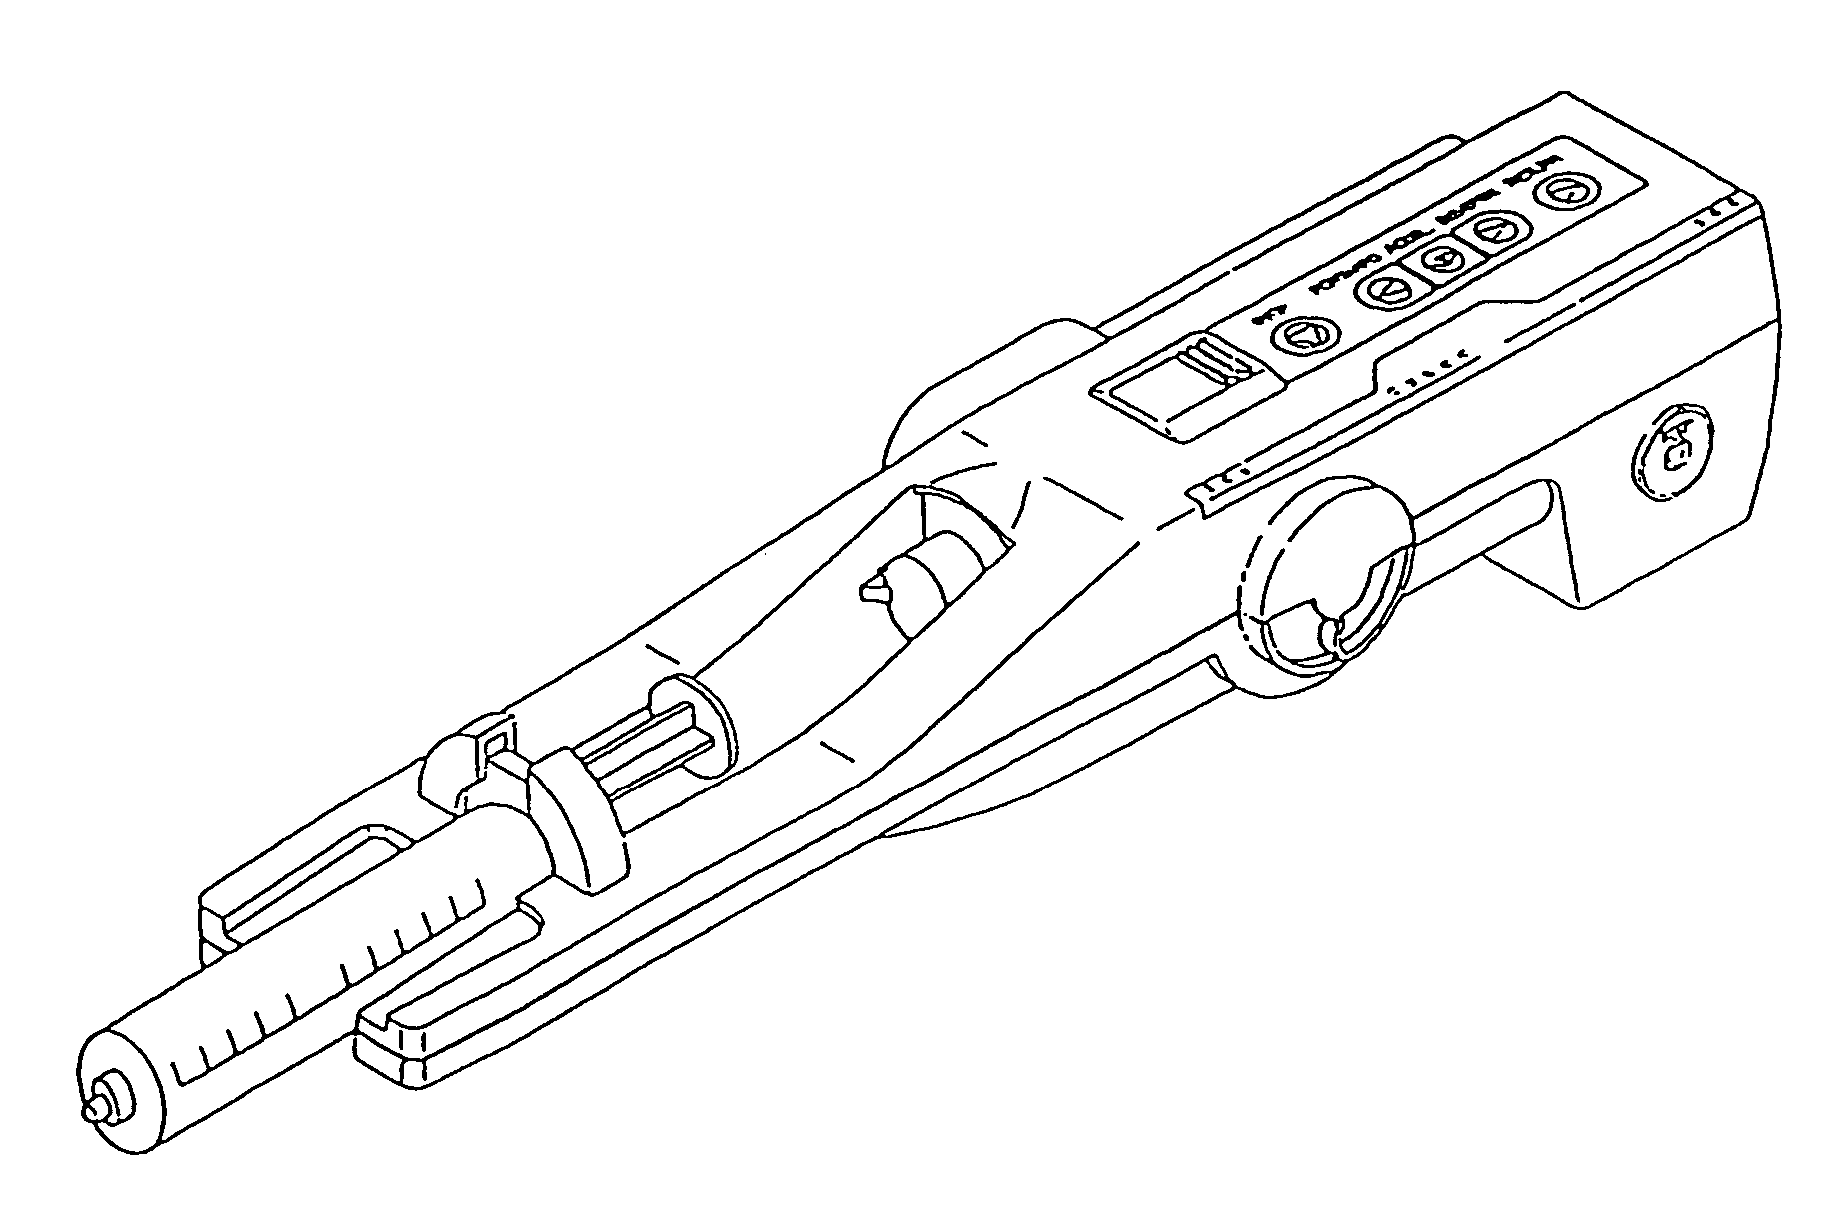 Cylinder holder for a syringe barrel